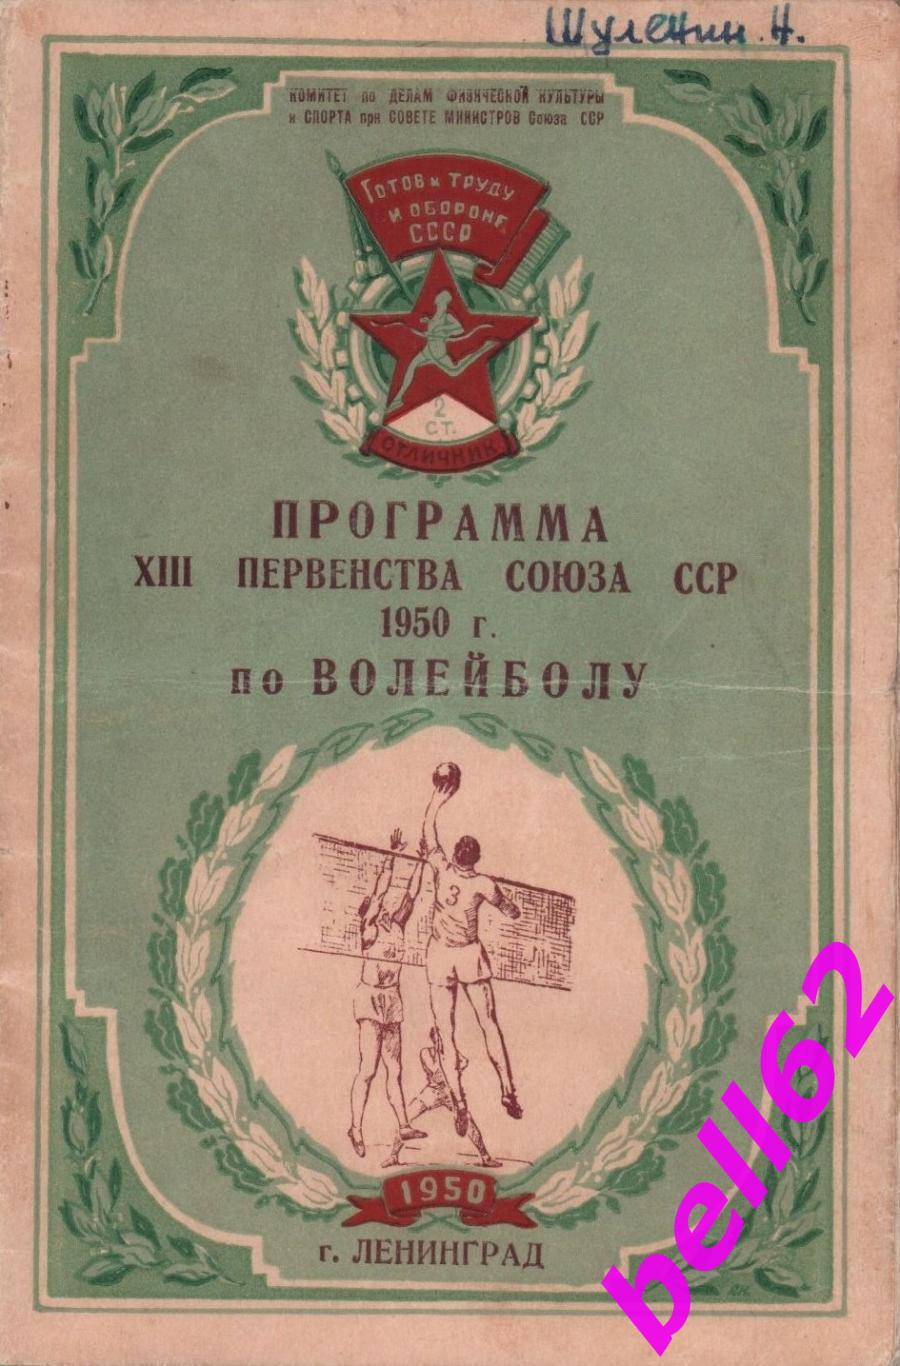 Первенство СССР по волейболу-16-18.11.1950 г. г. Ленинград.